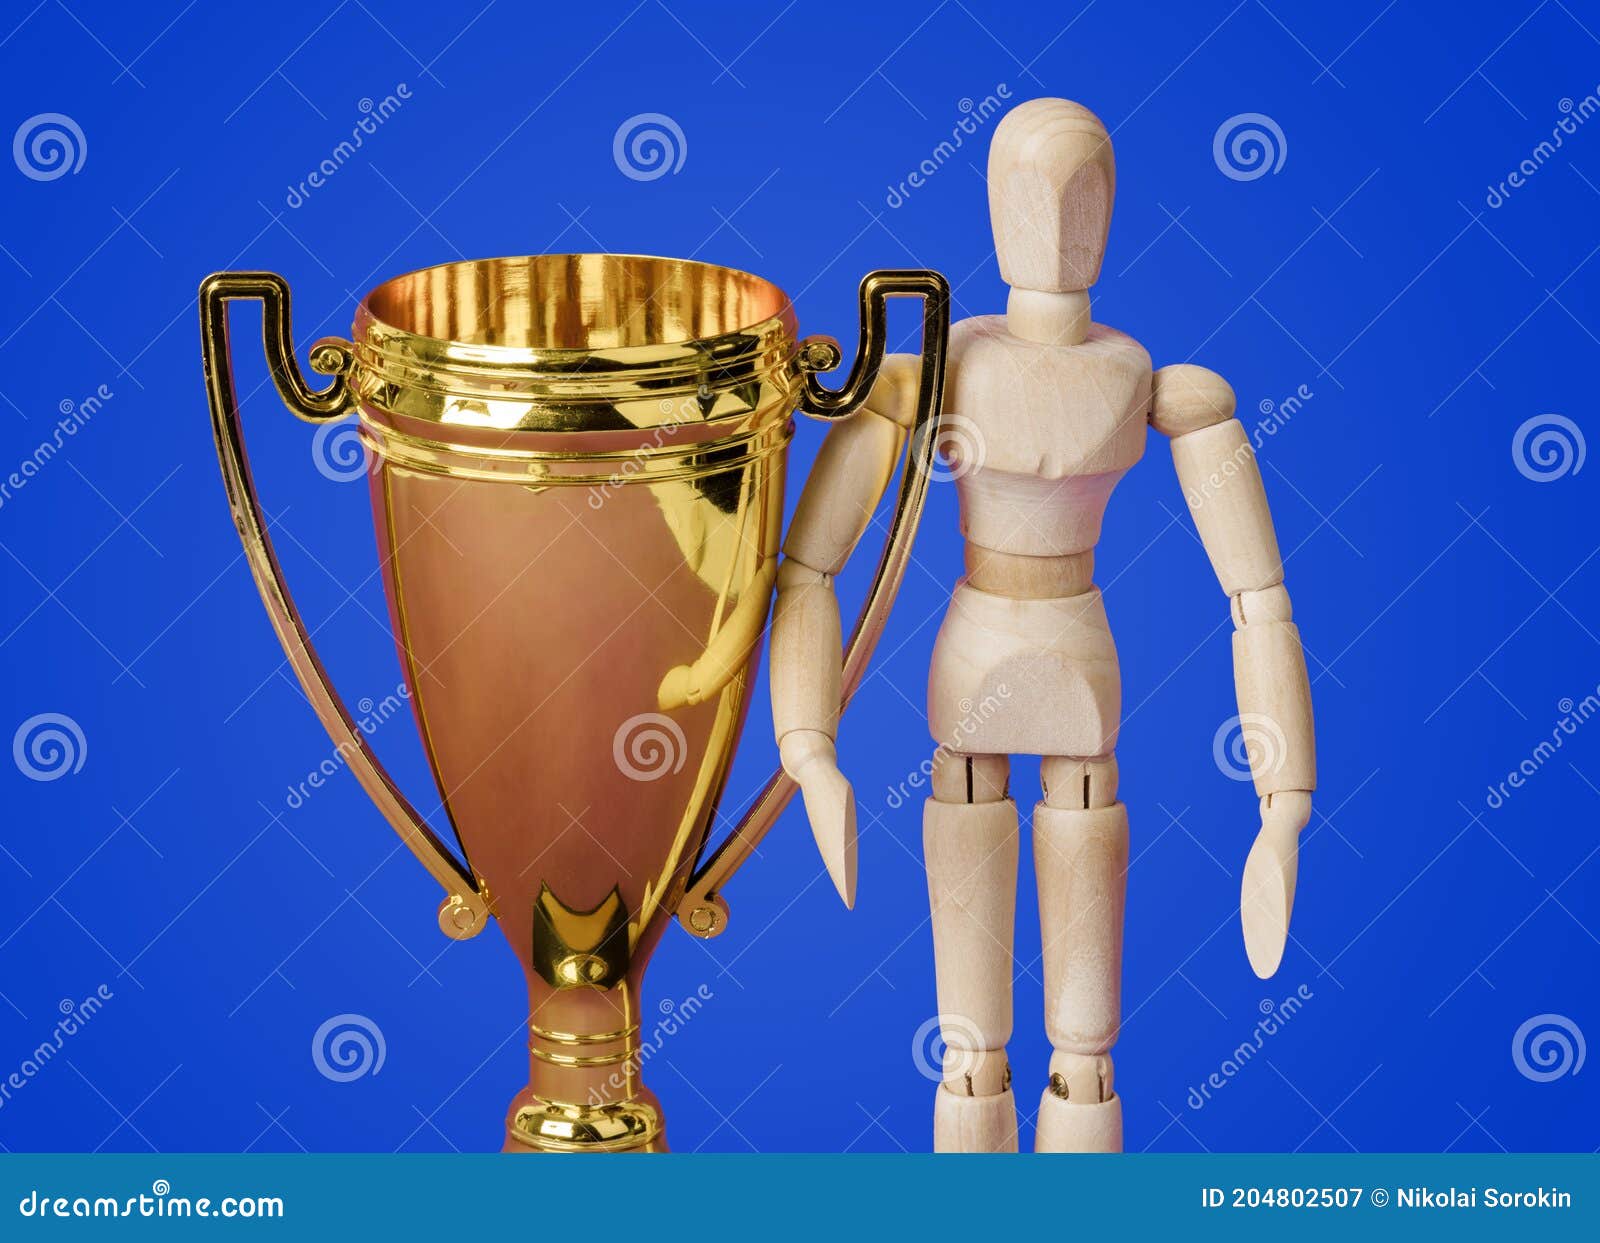 De Juguete De Madera Y Copa Trofeo Dorado En Azul Imagen de archivo Imagen modelo, brillante: 204802507